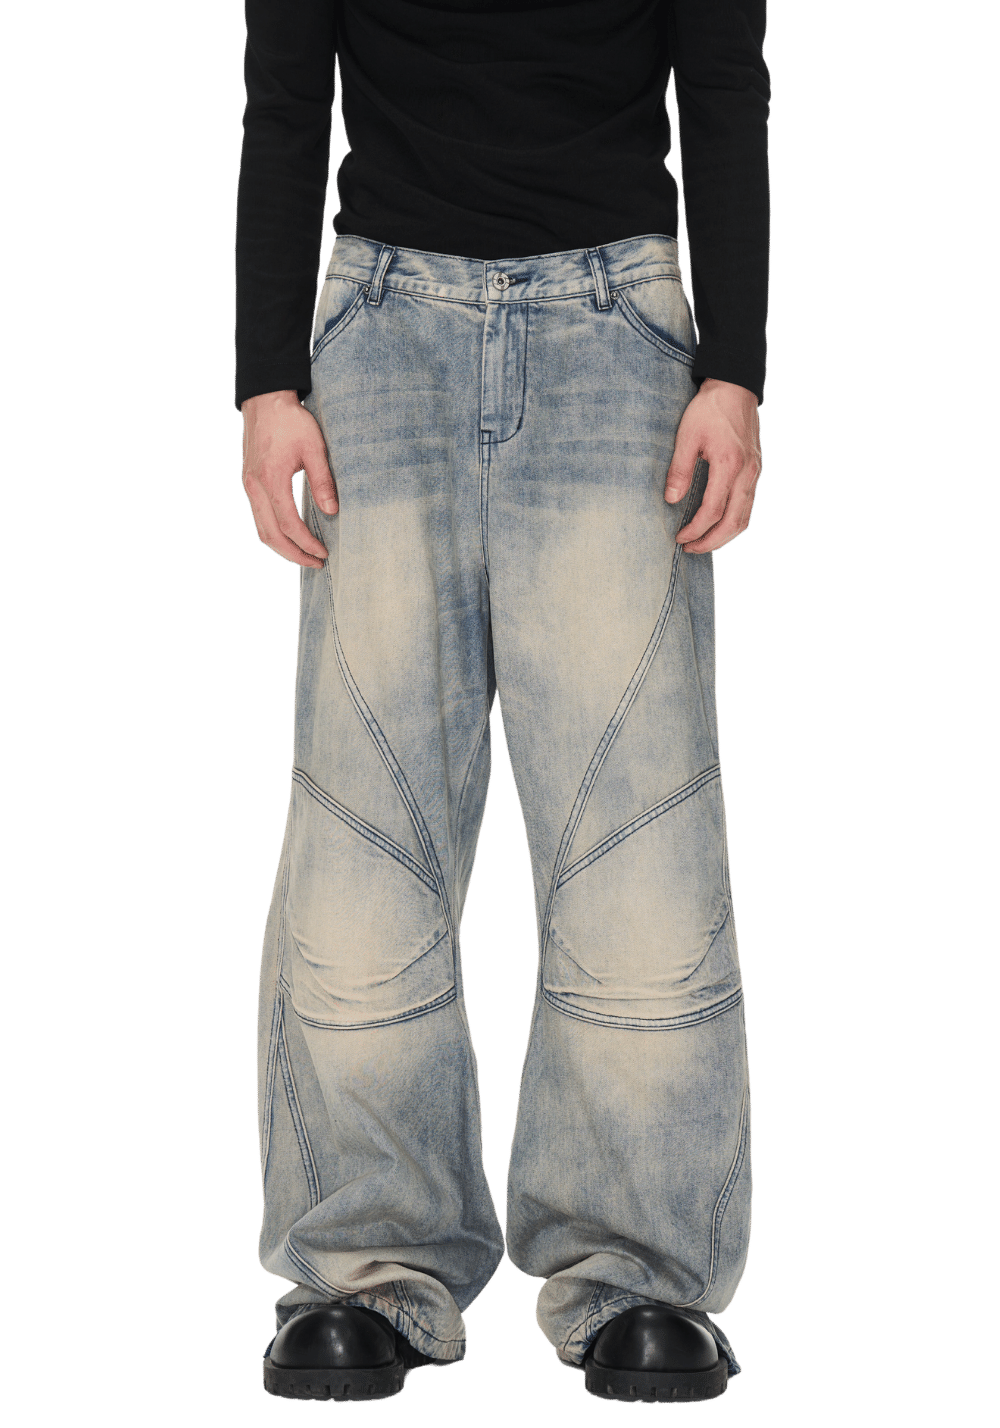 Washed Gradient Denim Jeans - PSYLOS 1, Washed Gradient Denim Jeans, Pants, BLIND NO PLAN, PSYLOS 1